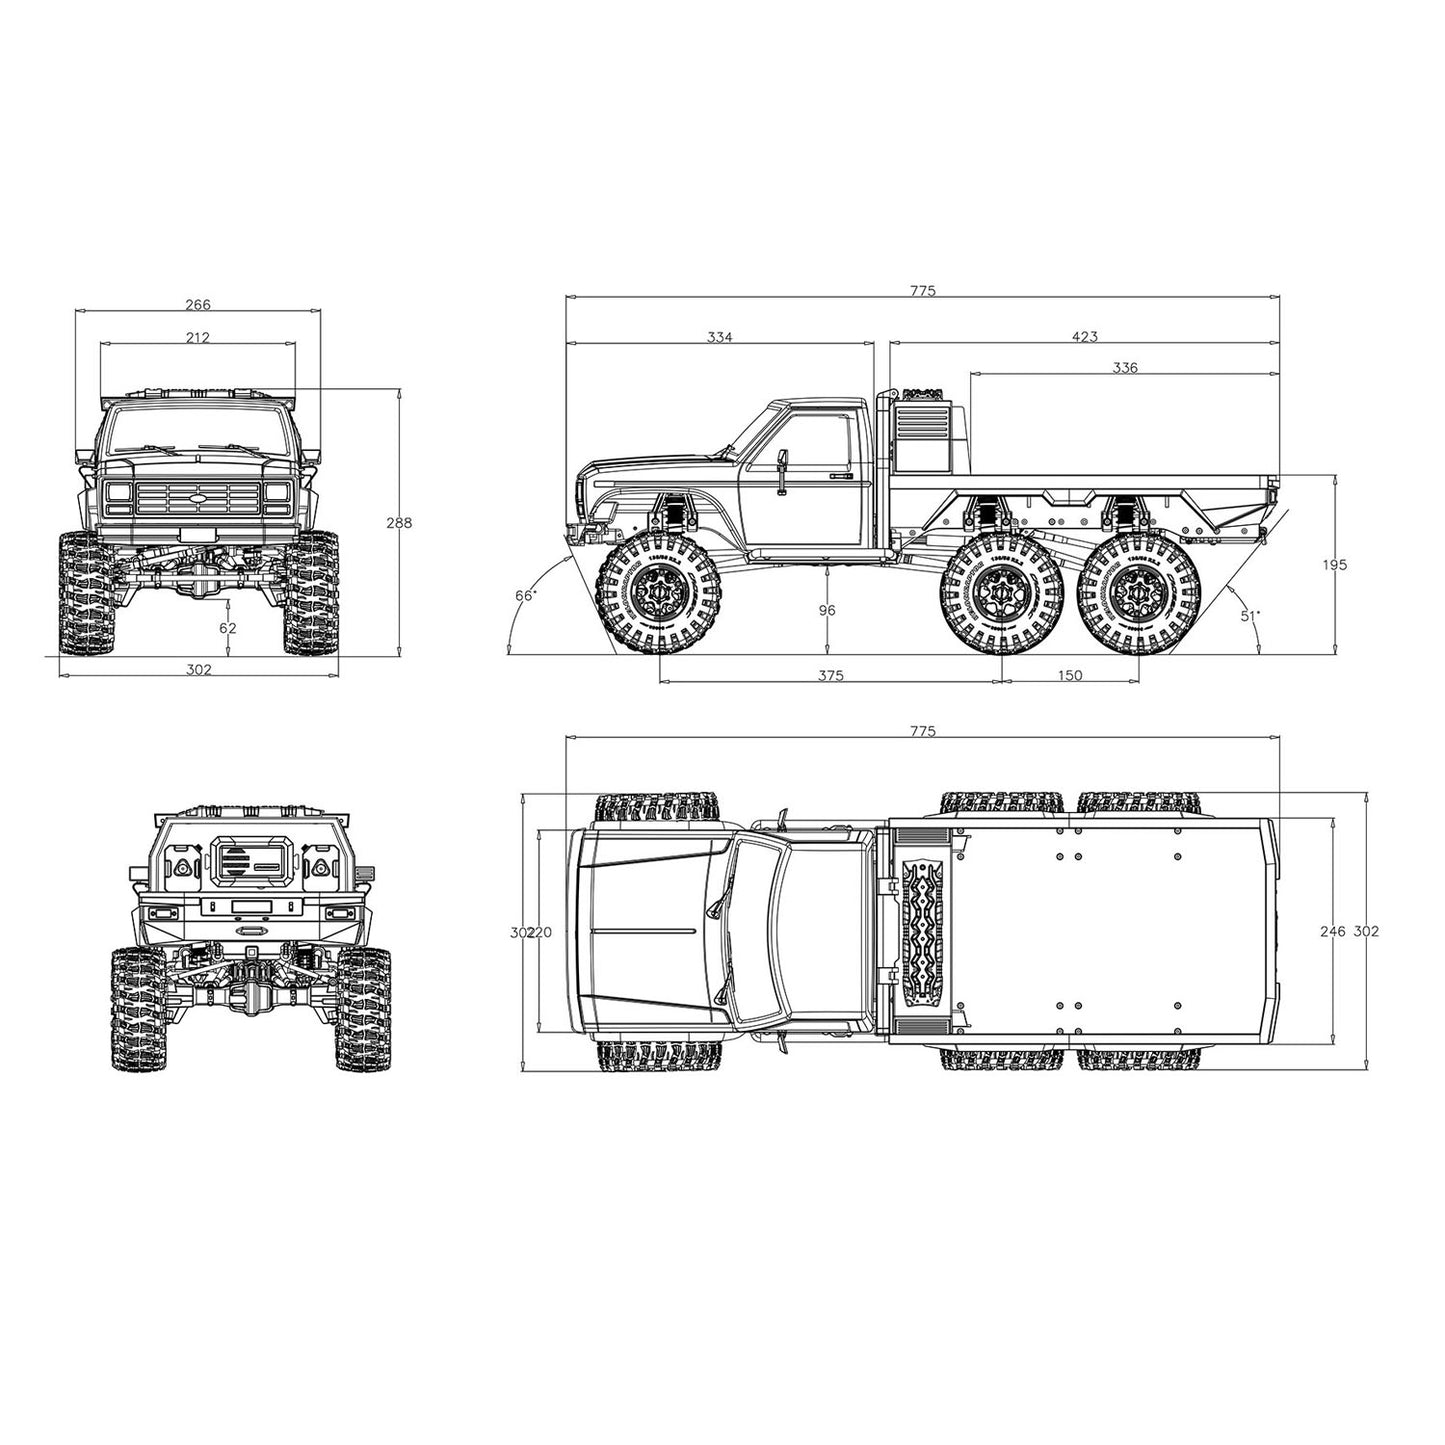 CORSSRC EMO XL 1/8 RC Crawler 6WD Off-road Hauler Vehicles